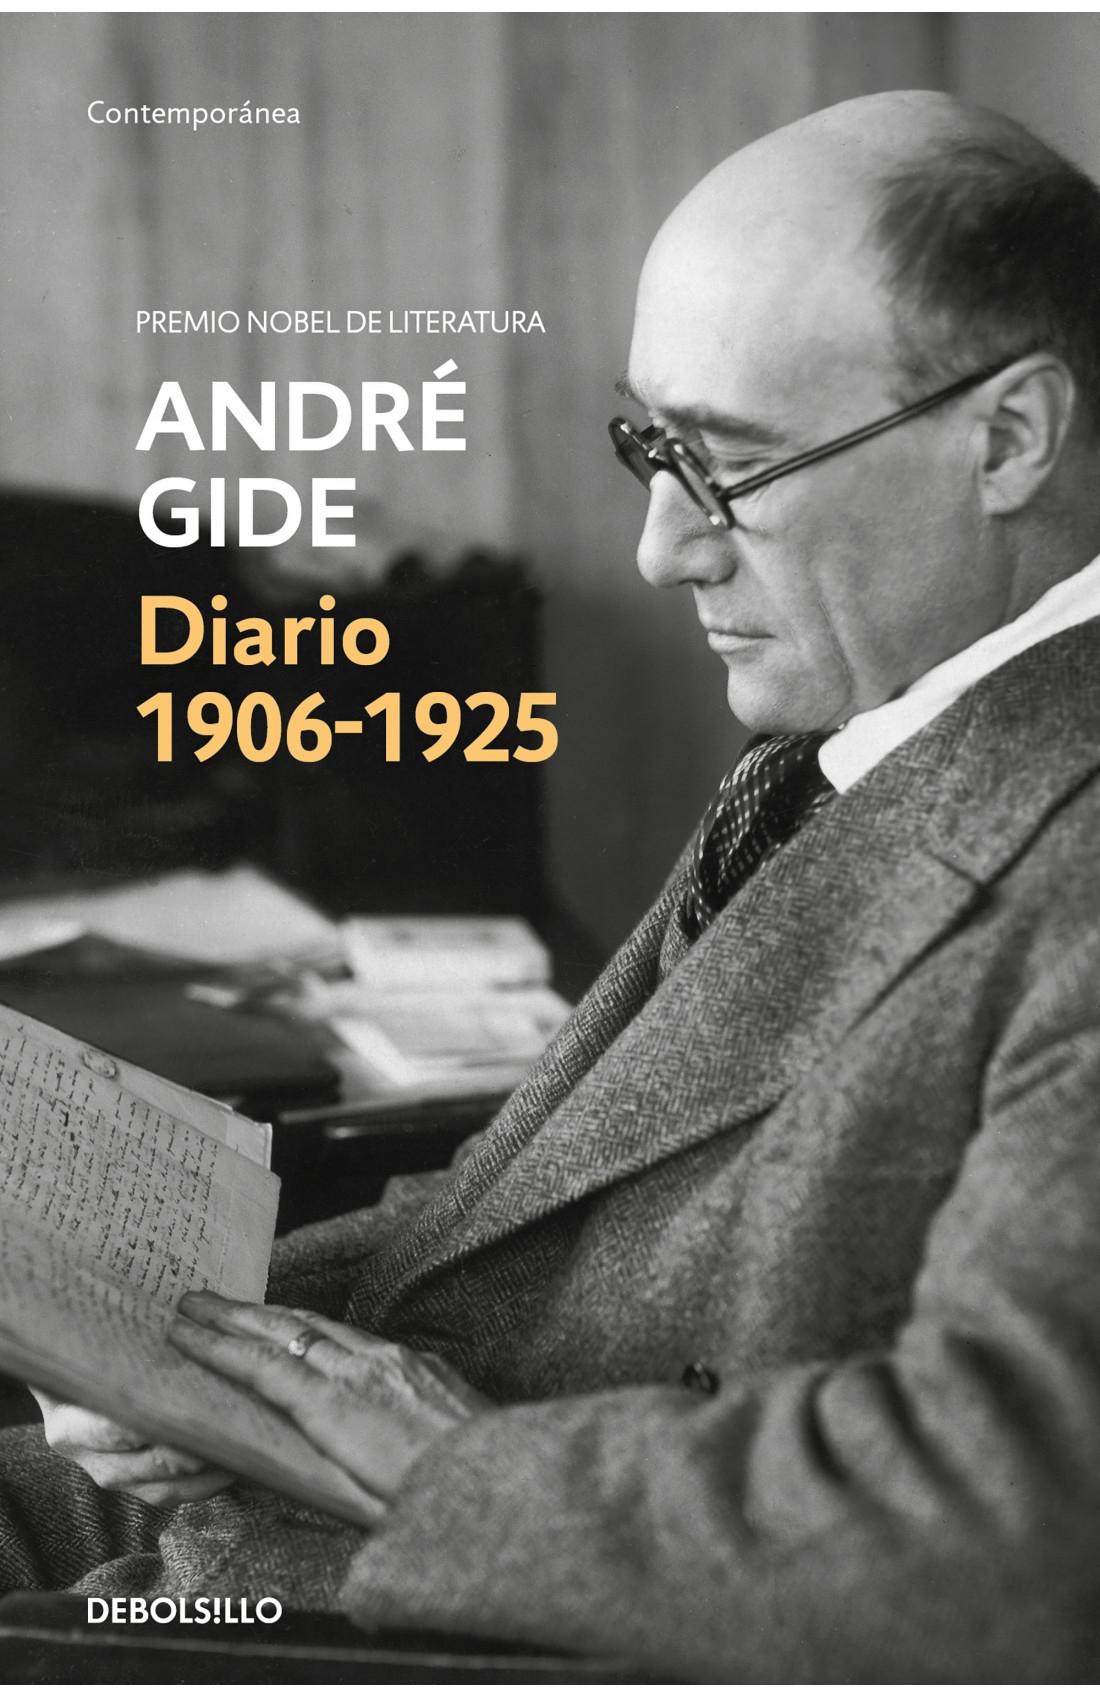 Diario 2  André Gide (1906-1925). 